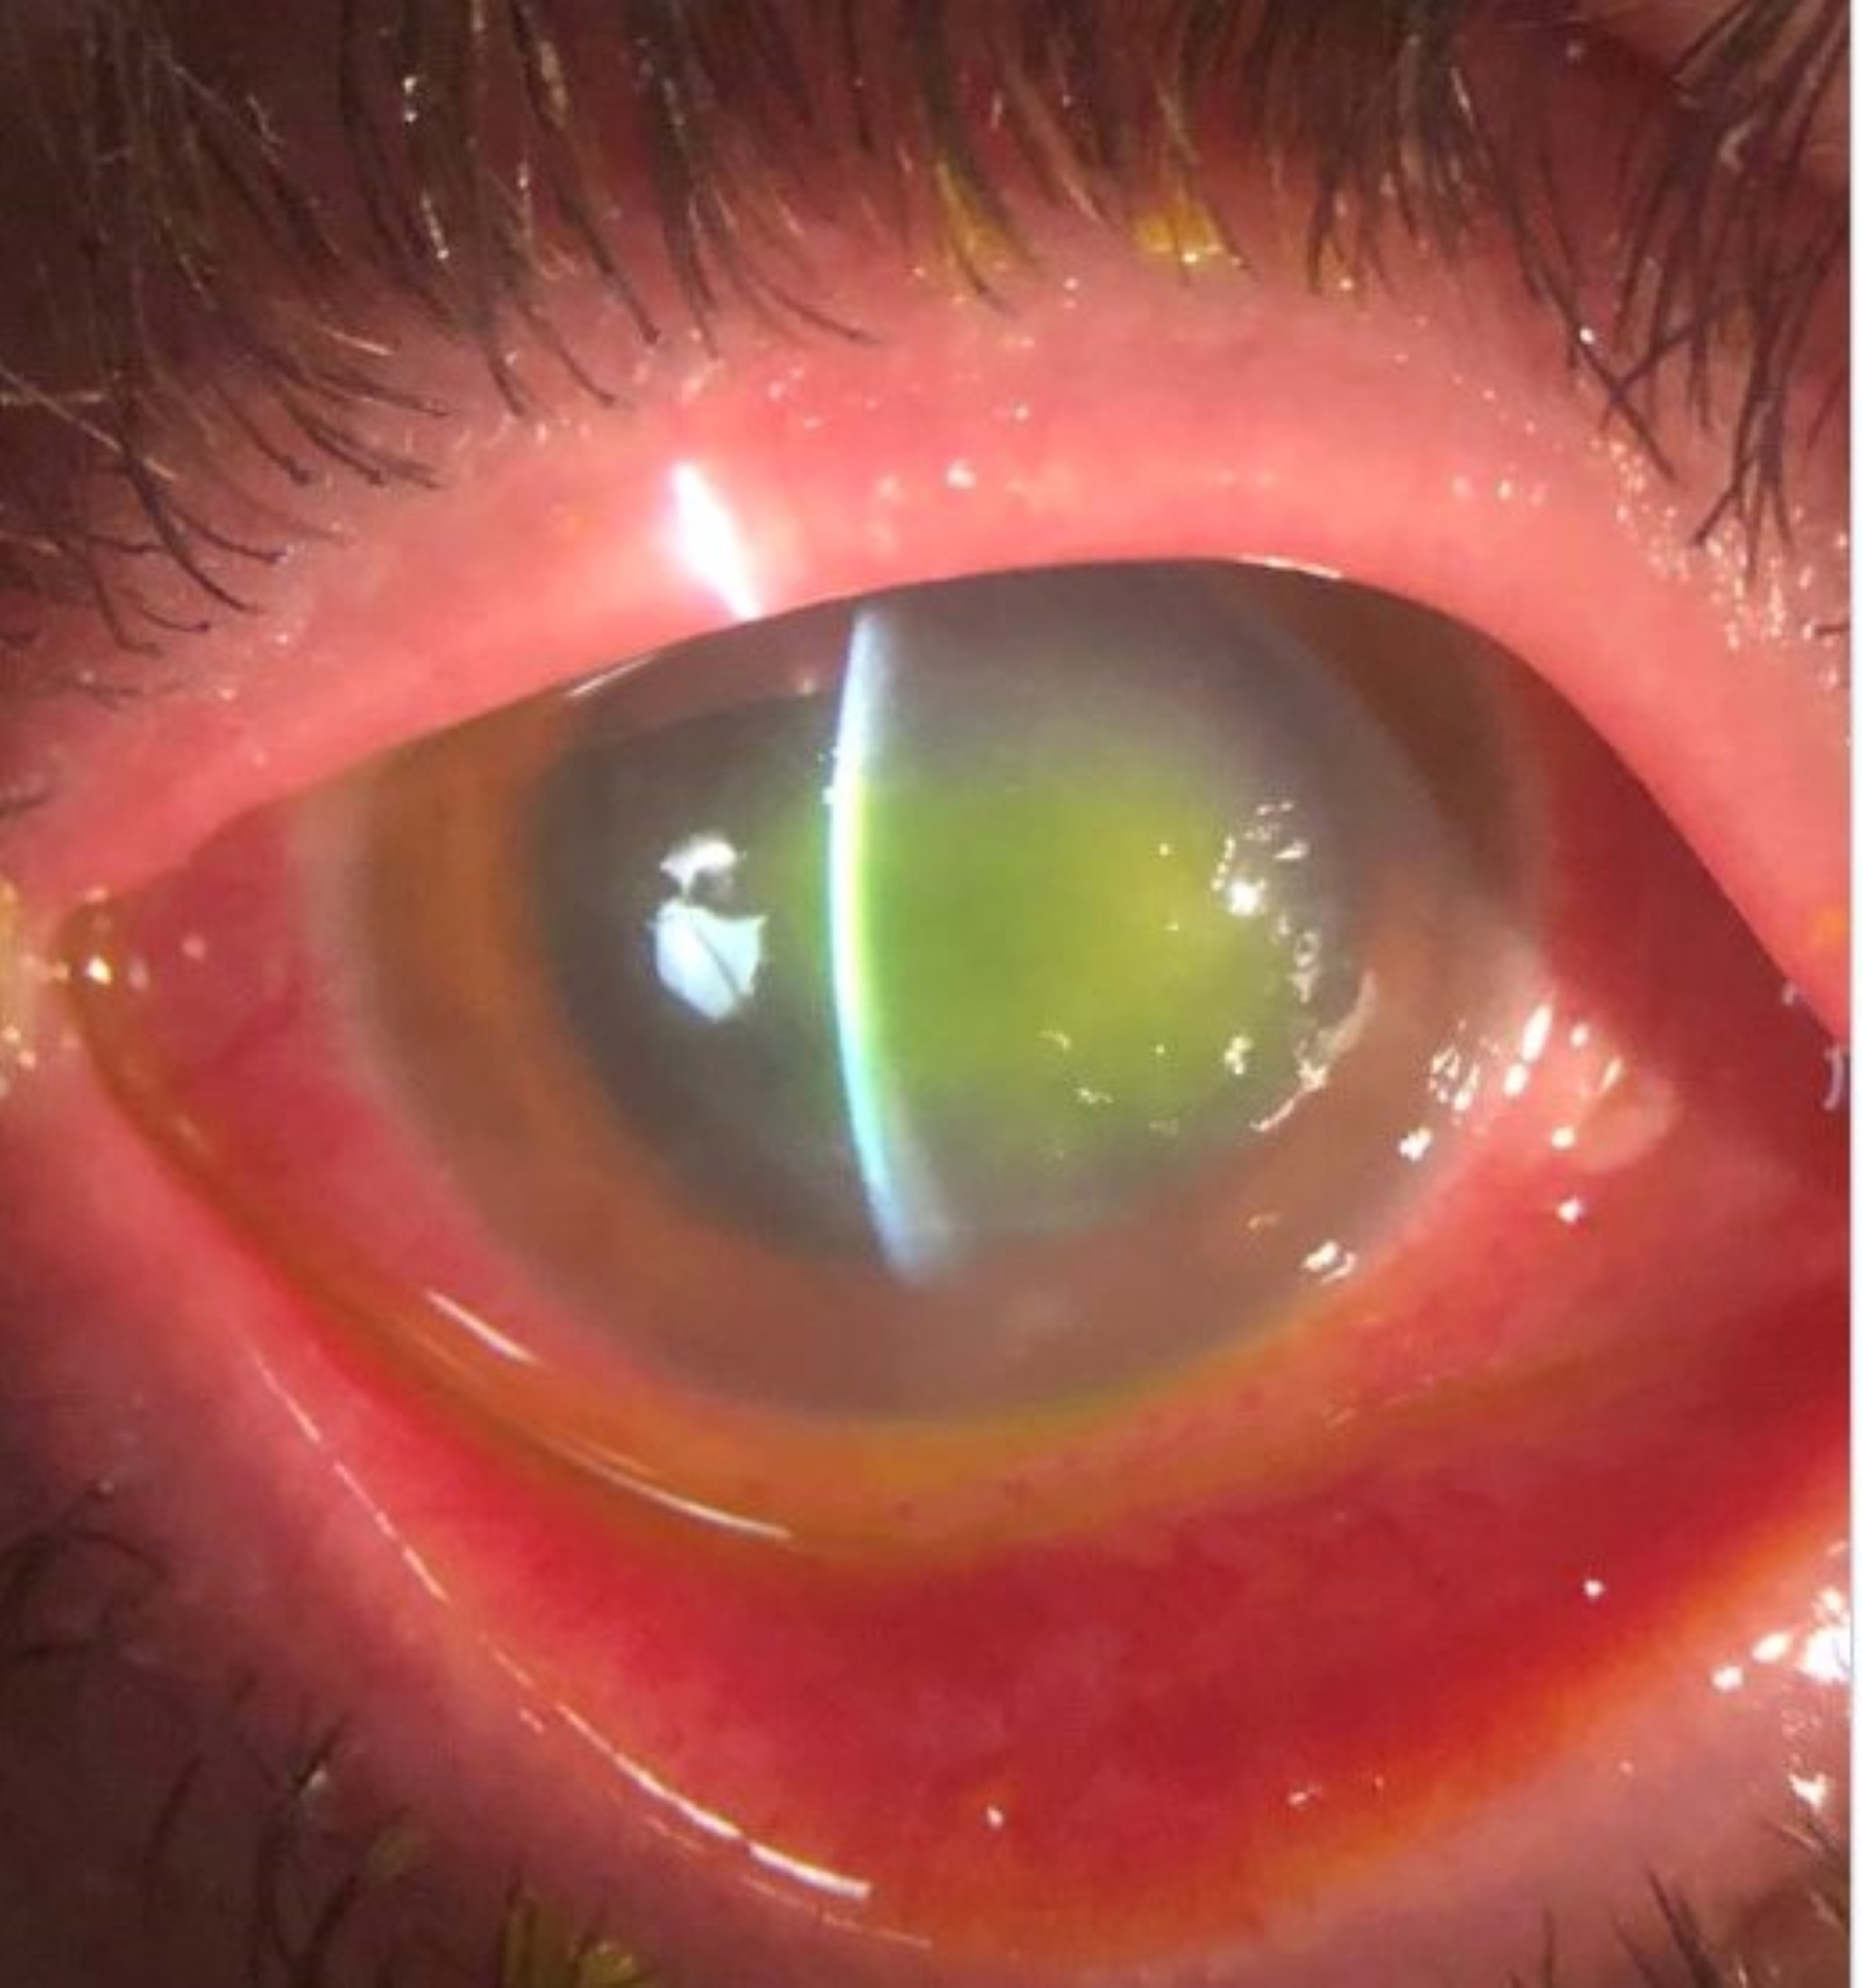 acanthamoeba corneal ulcer